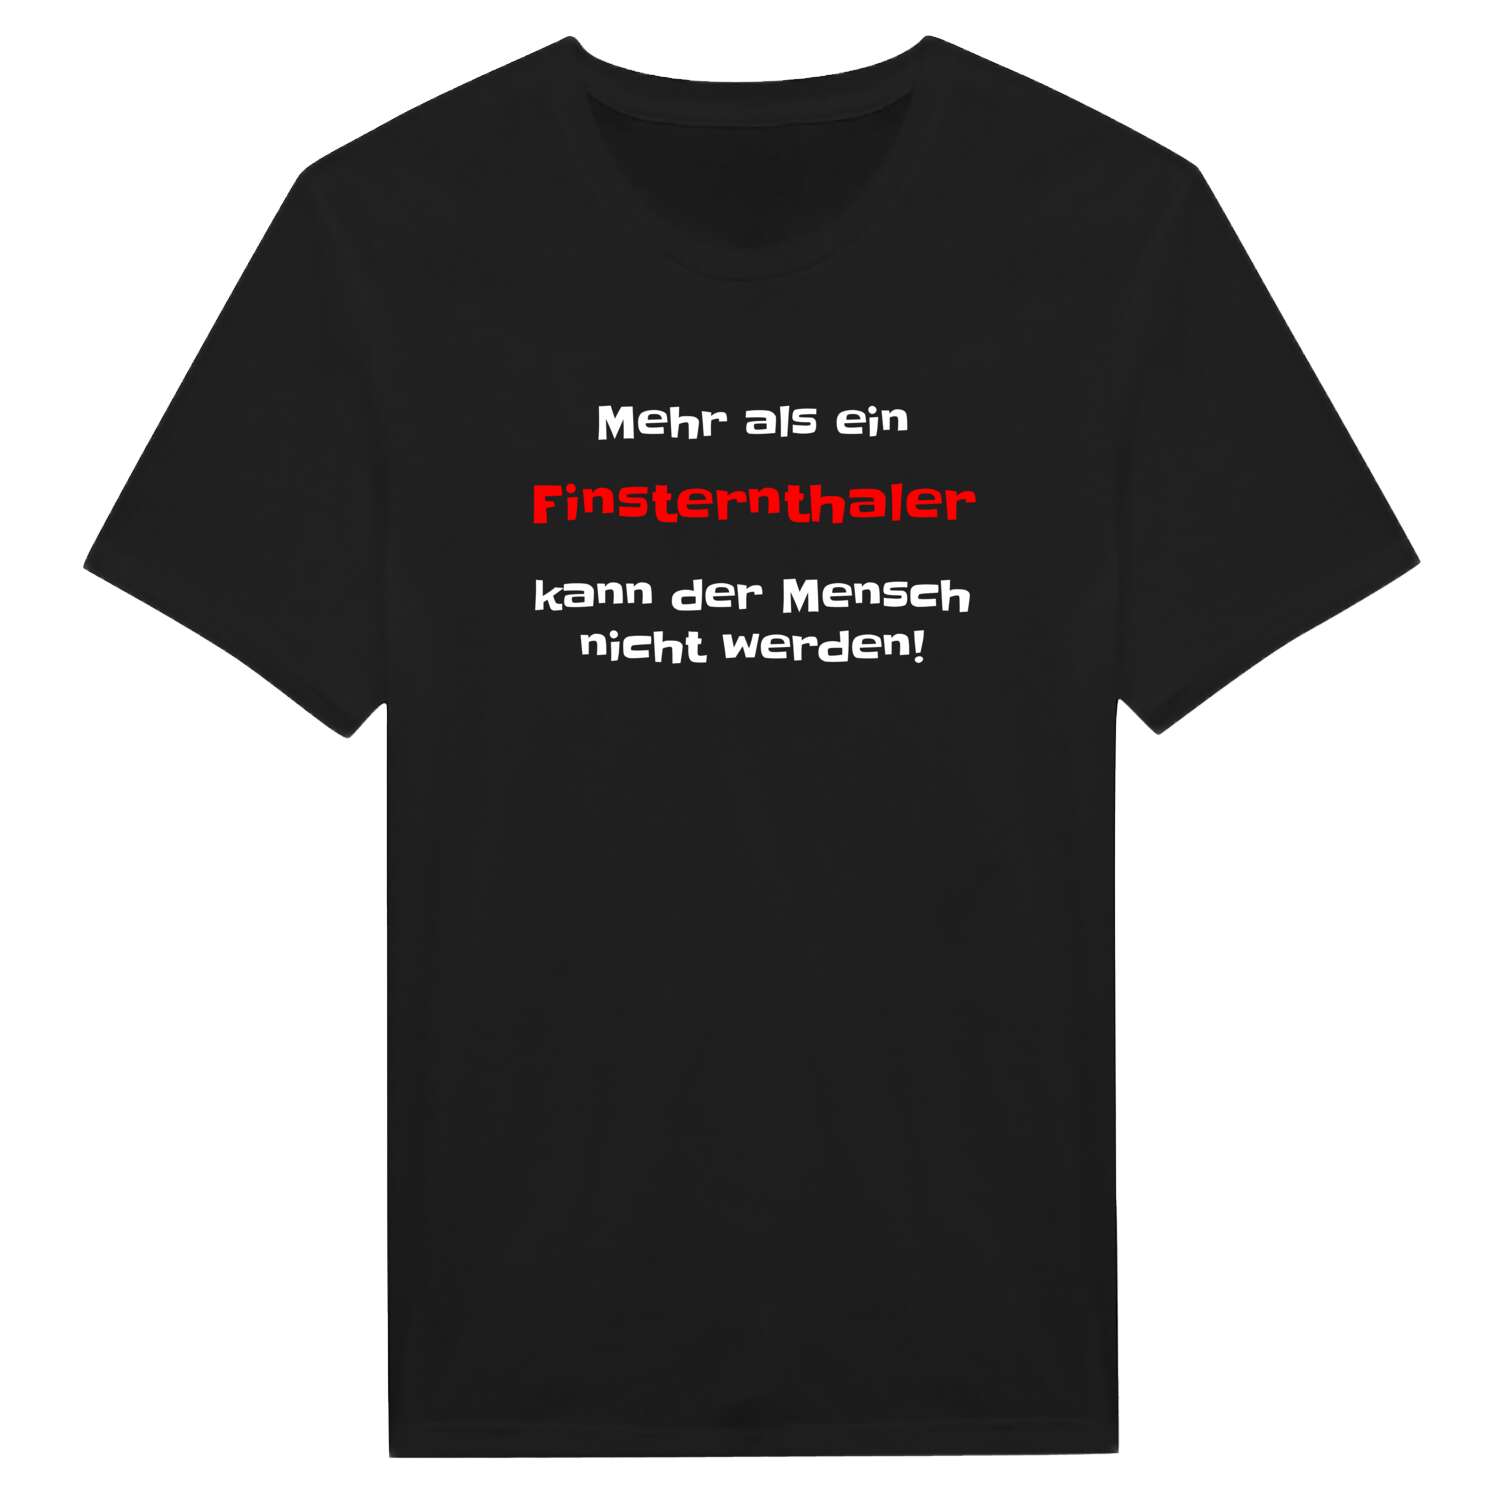 Finsternthal T-Shirt »Mehr als ein«